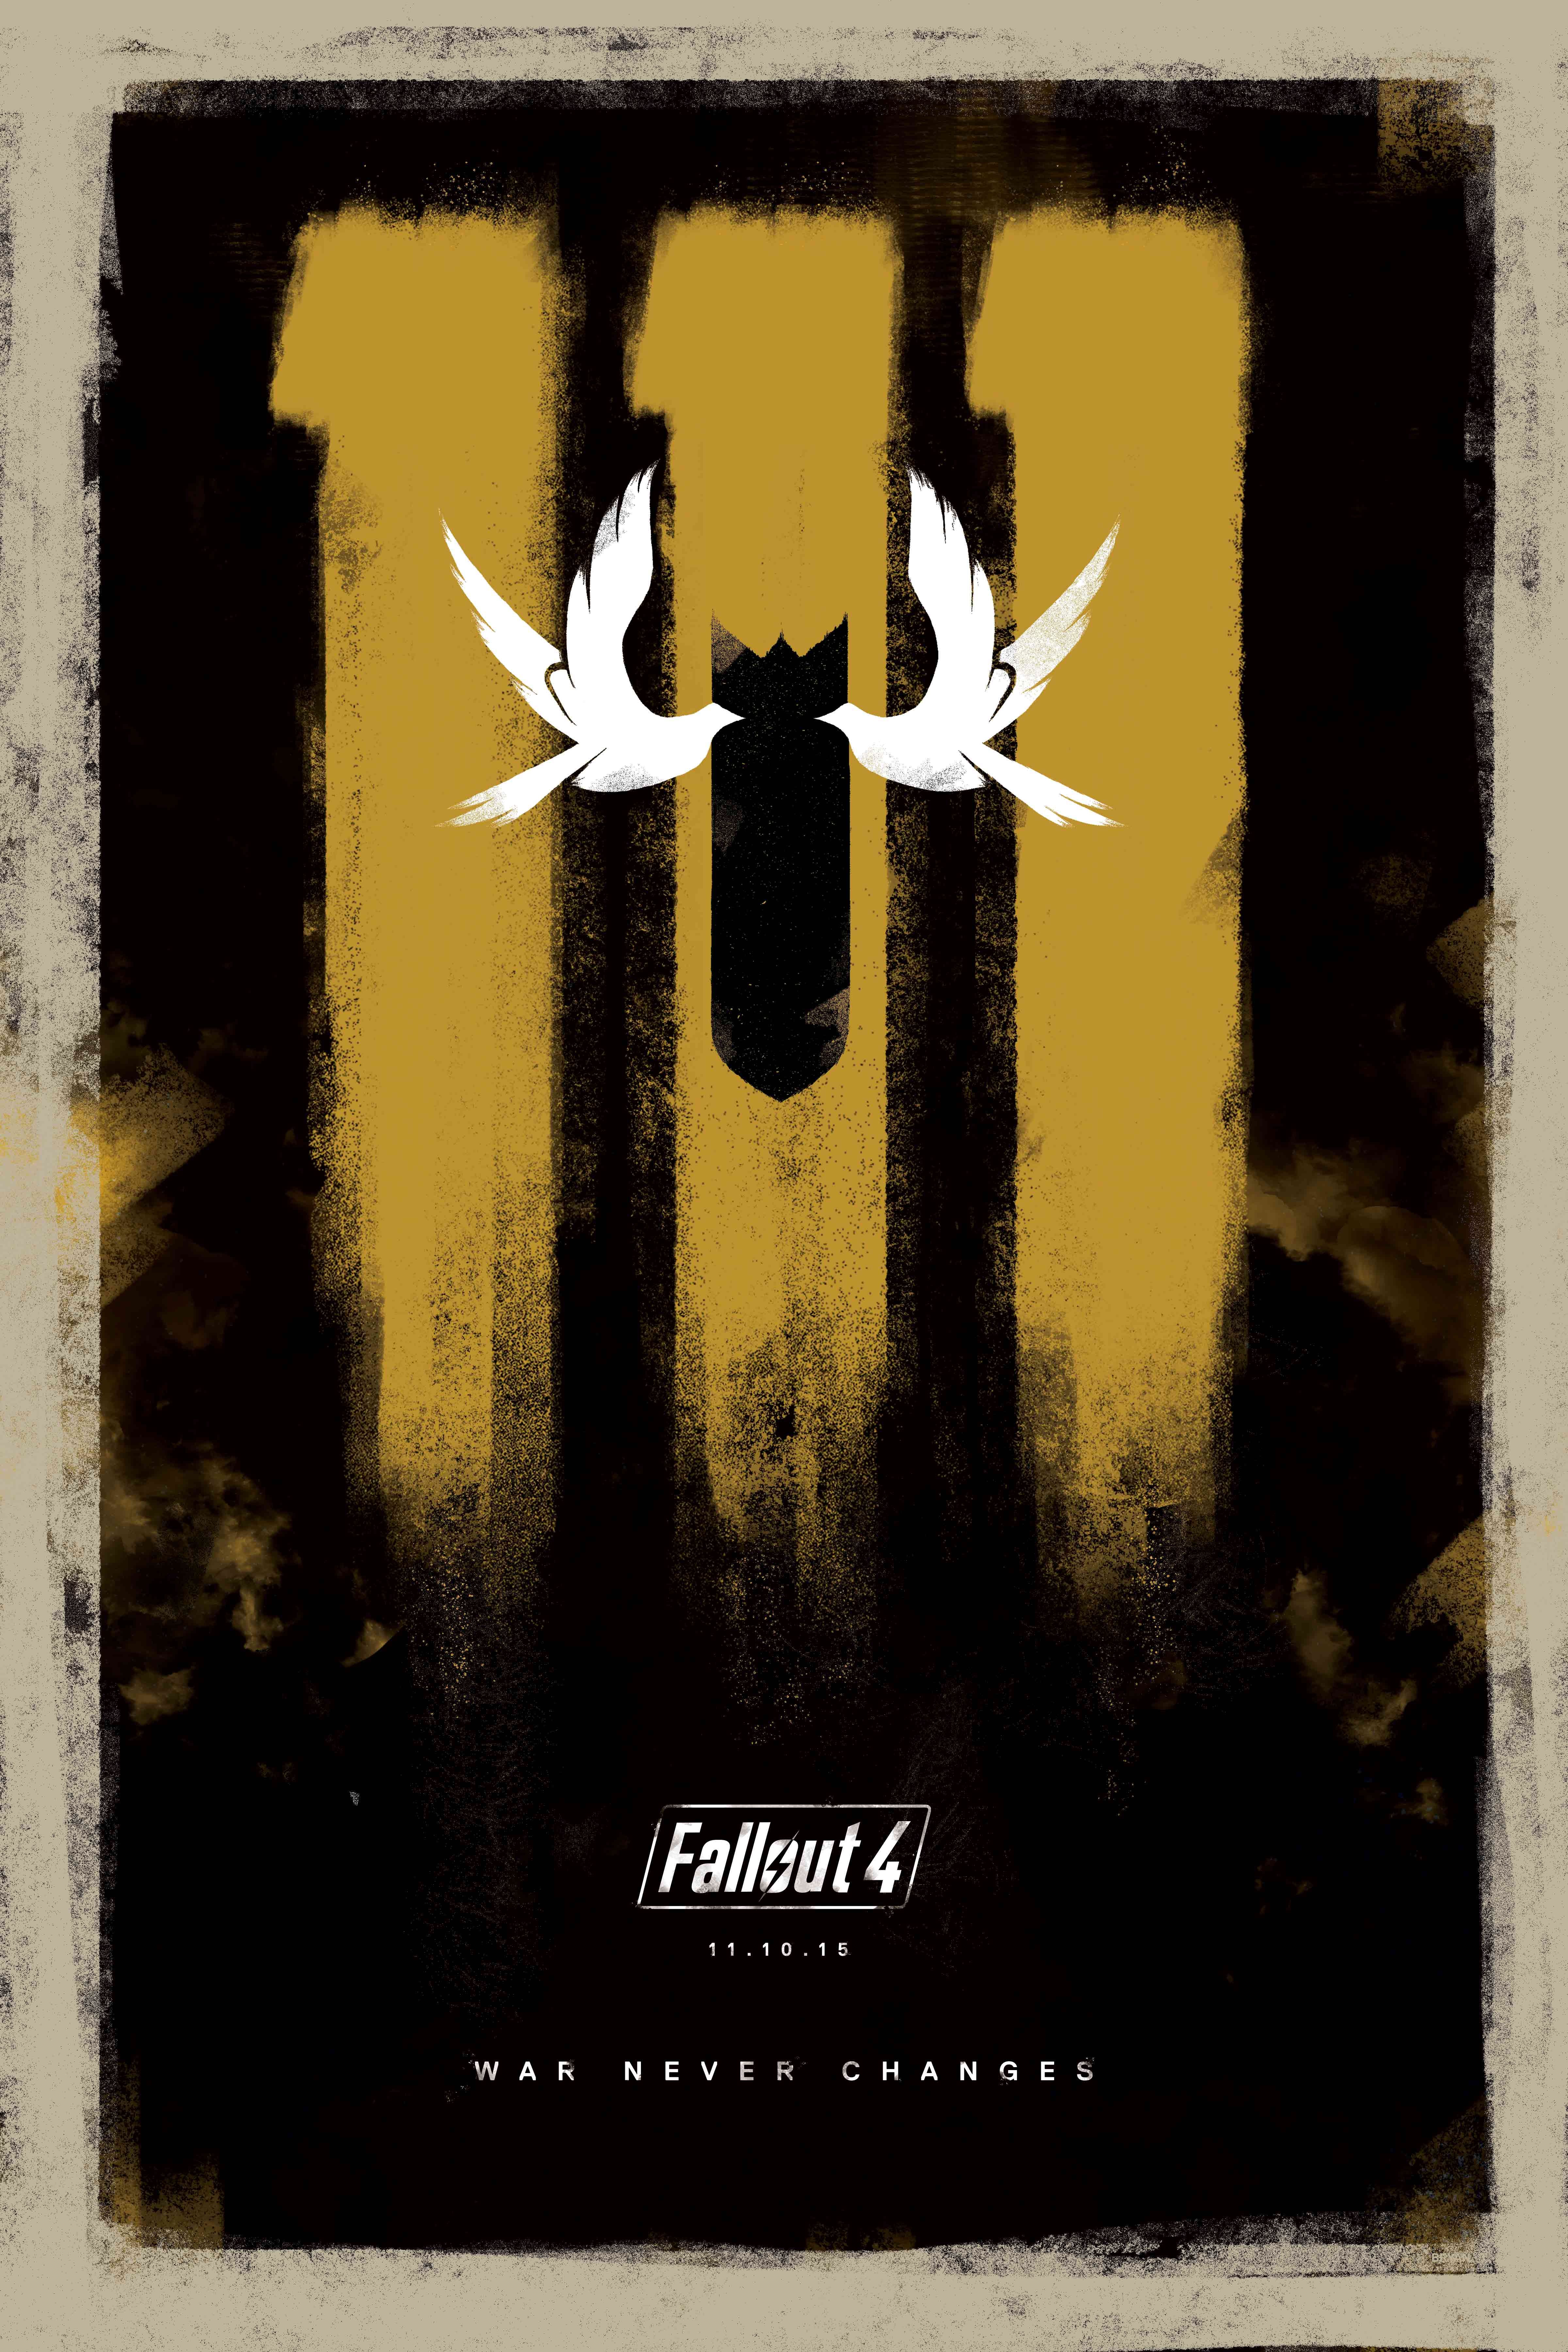 Fallout 4: War Never Changes. Fallout 4 wallpaper, Fallout art, Nerd art